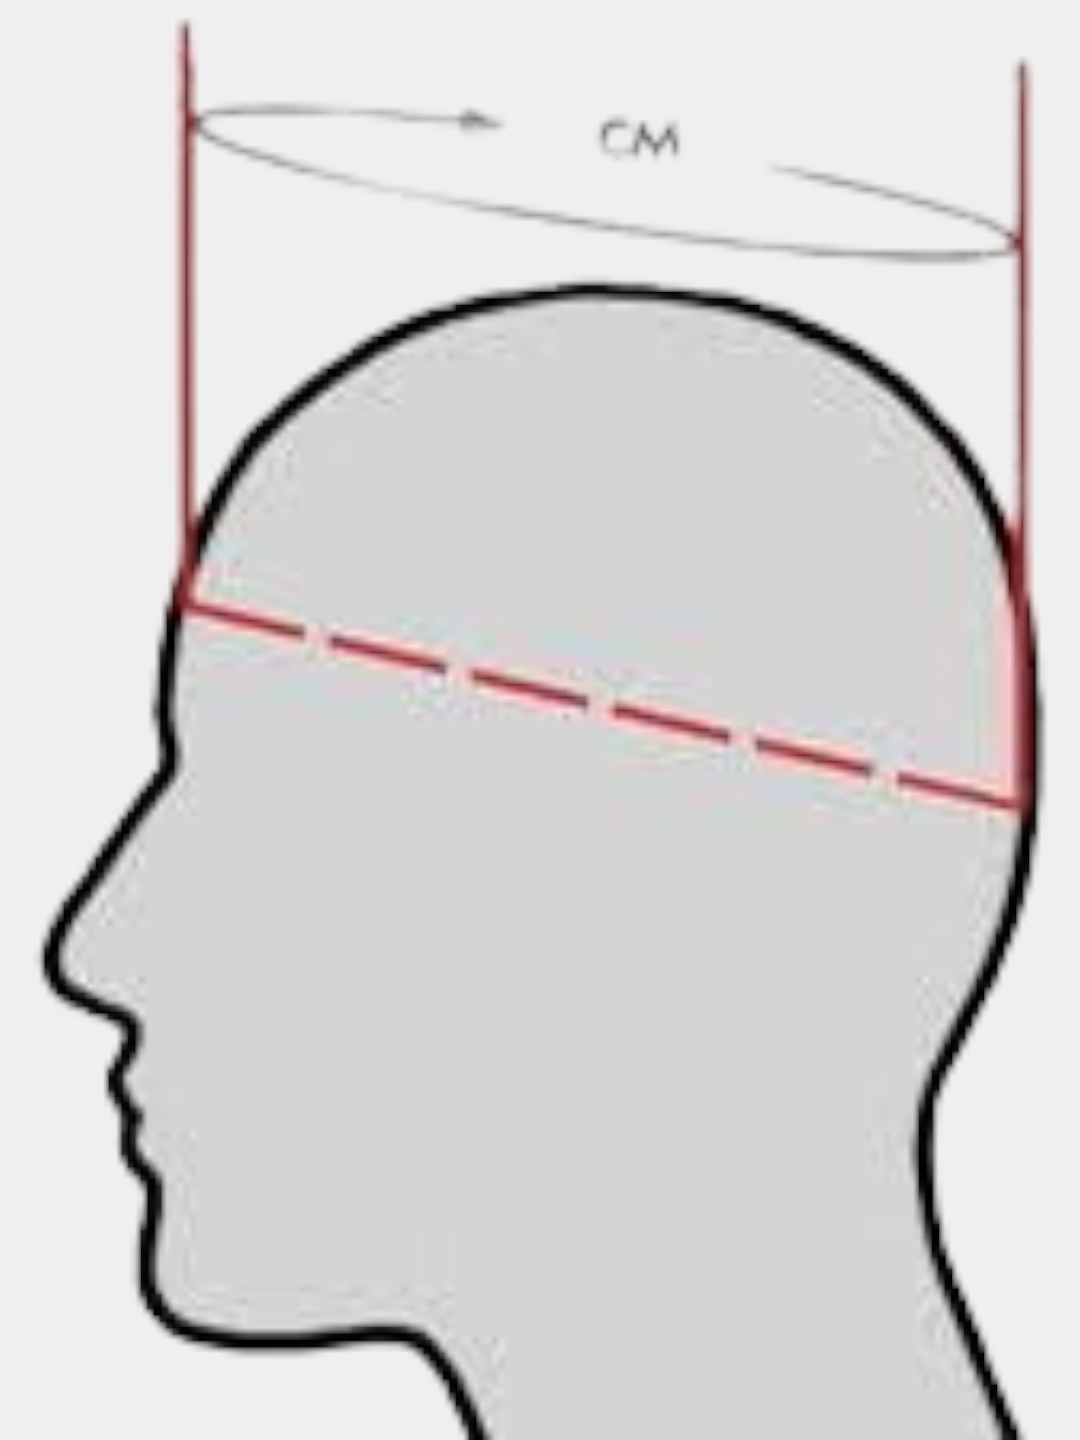 Как измерить окружность головы